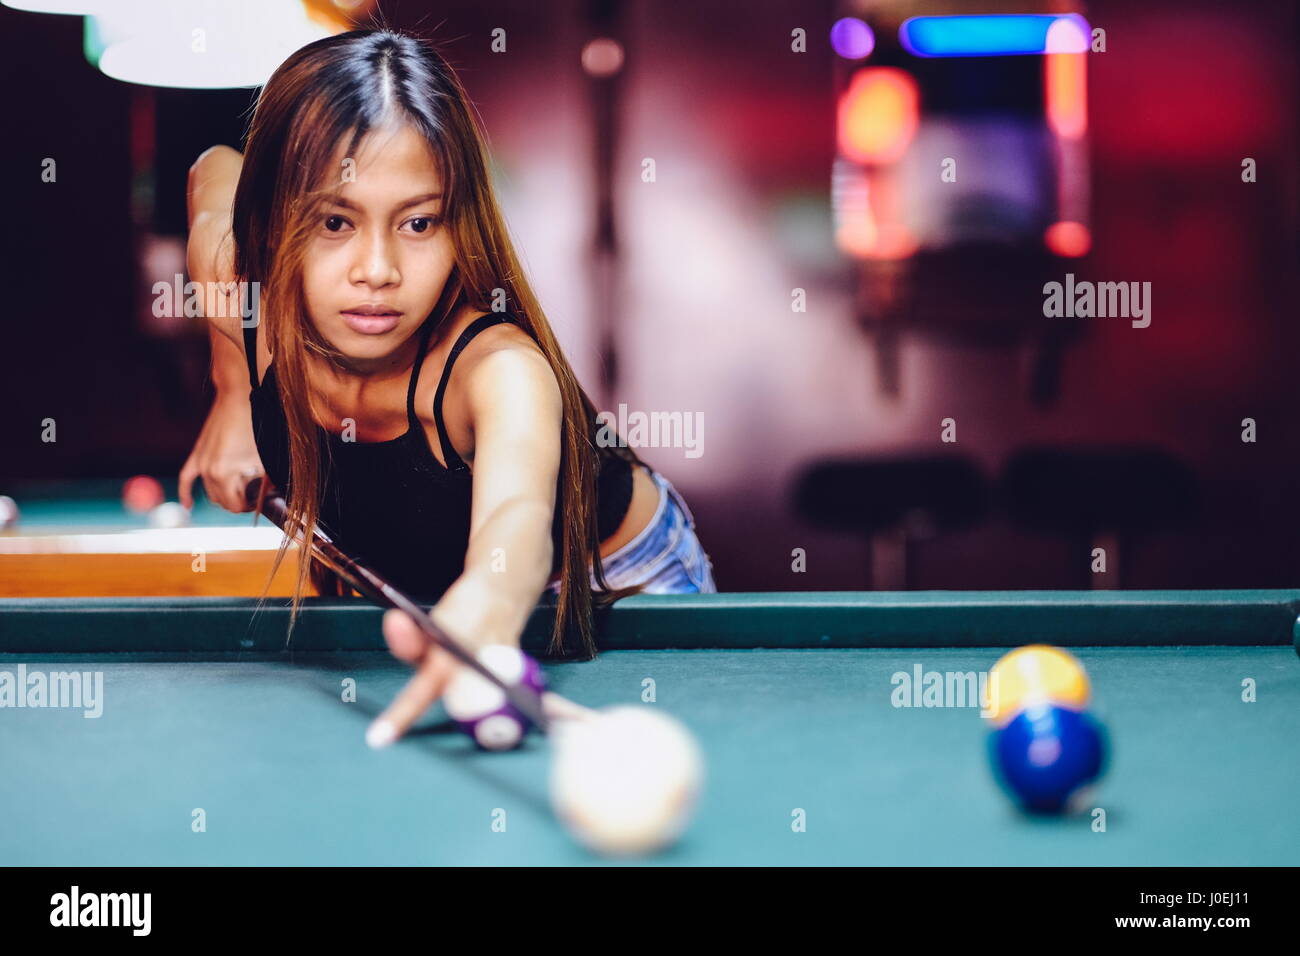 Young beautiful girl playing billiard in a club Stock Photo